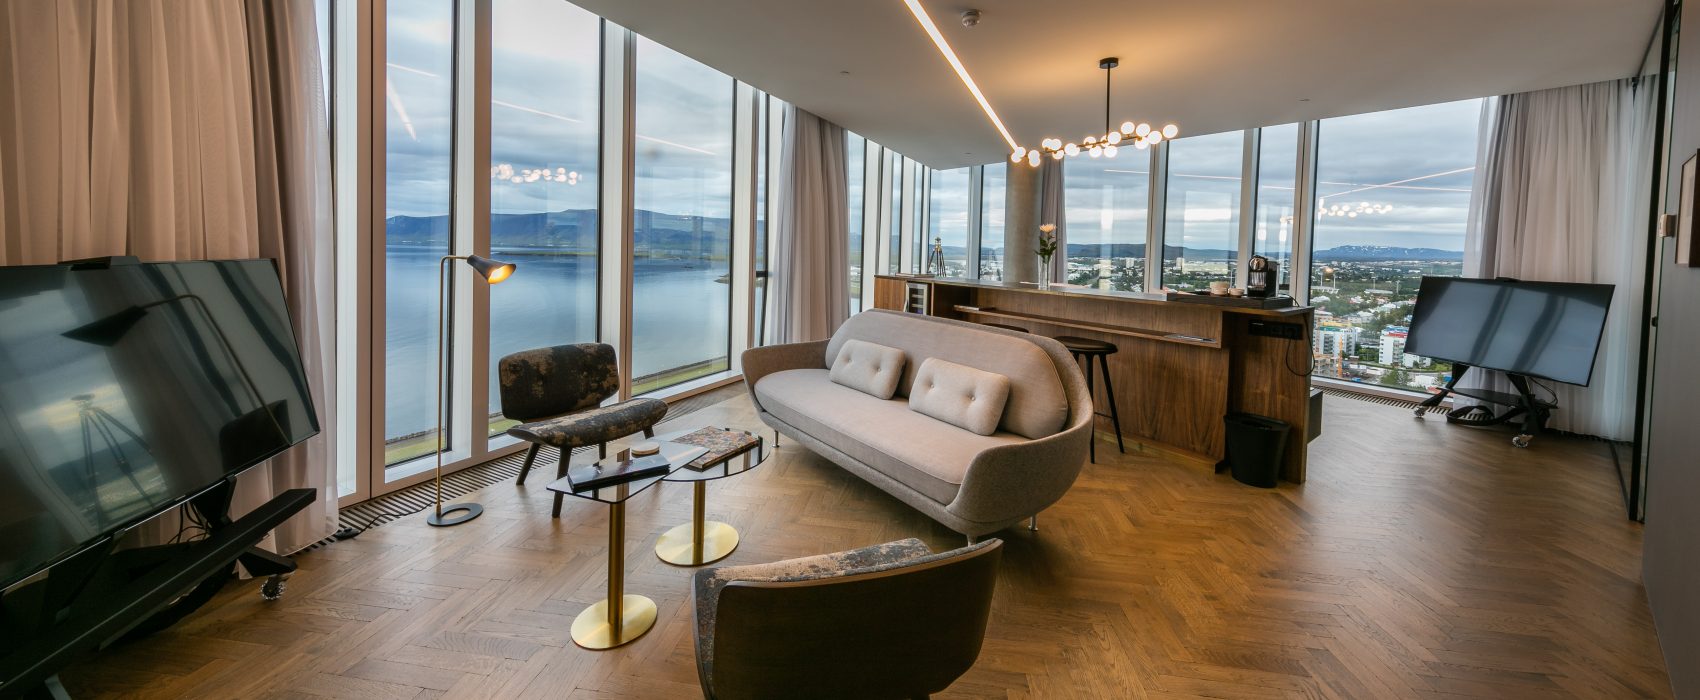 Small Luxury Hotel Reykjavik